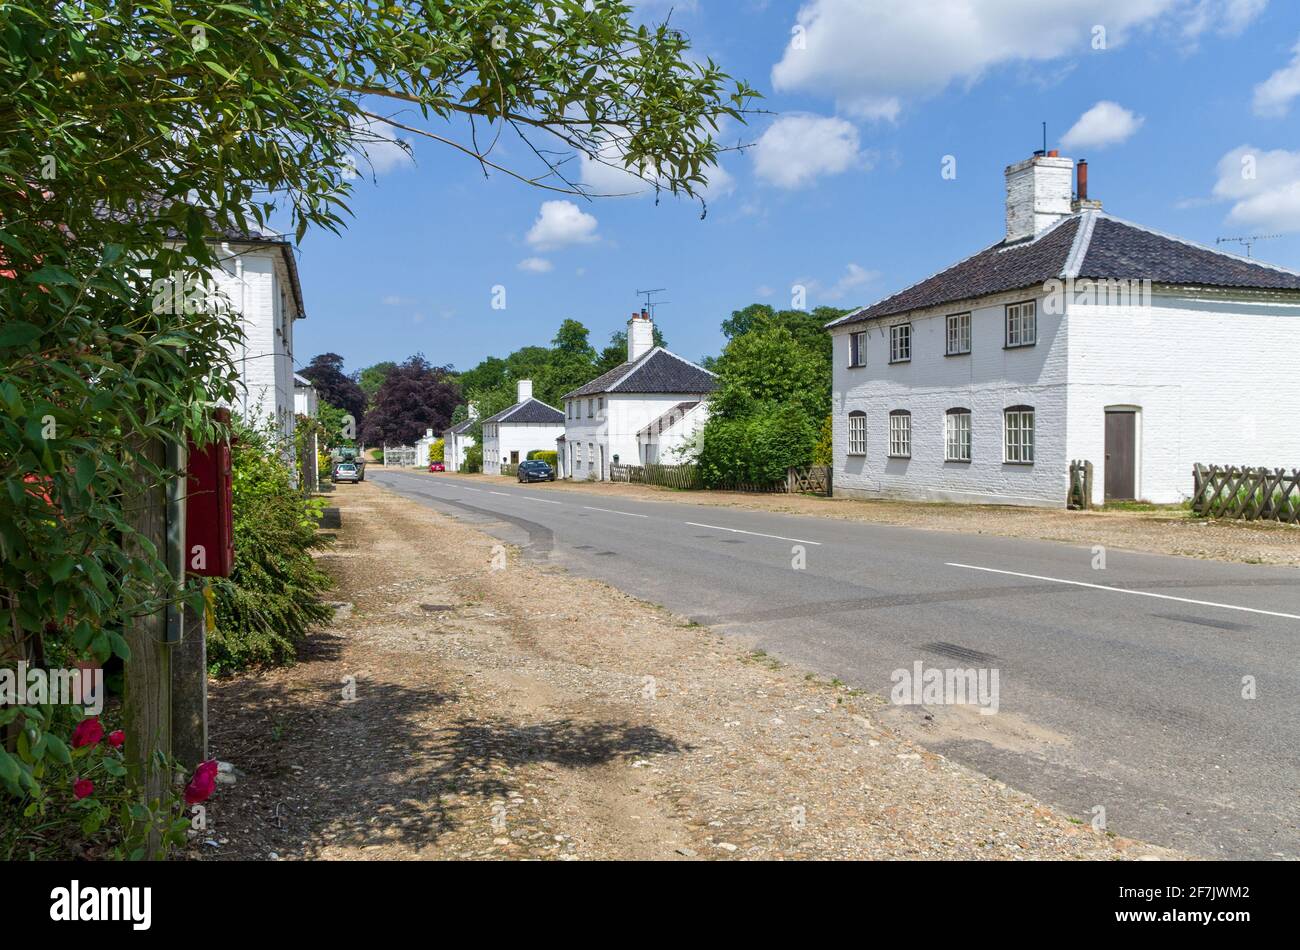 Scena di strada nel villaggio di New Houghton, Norfolk, UK,; case bianche con doppia facciata risalente al 1729. Foto Stock